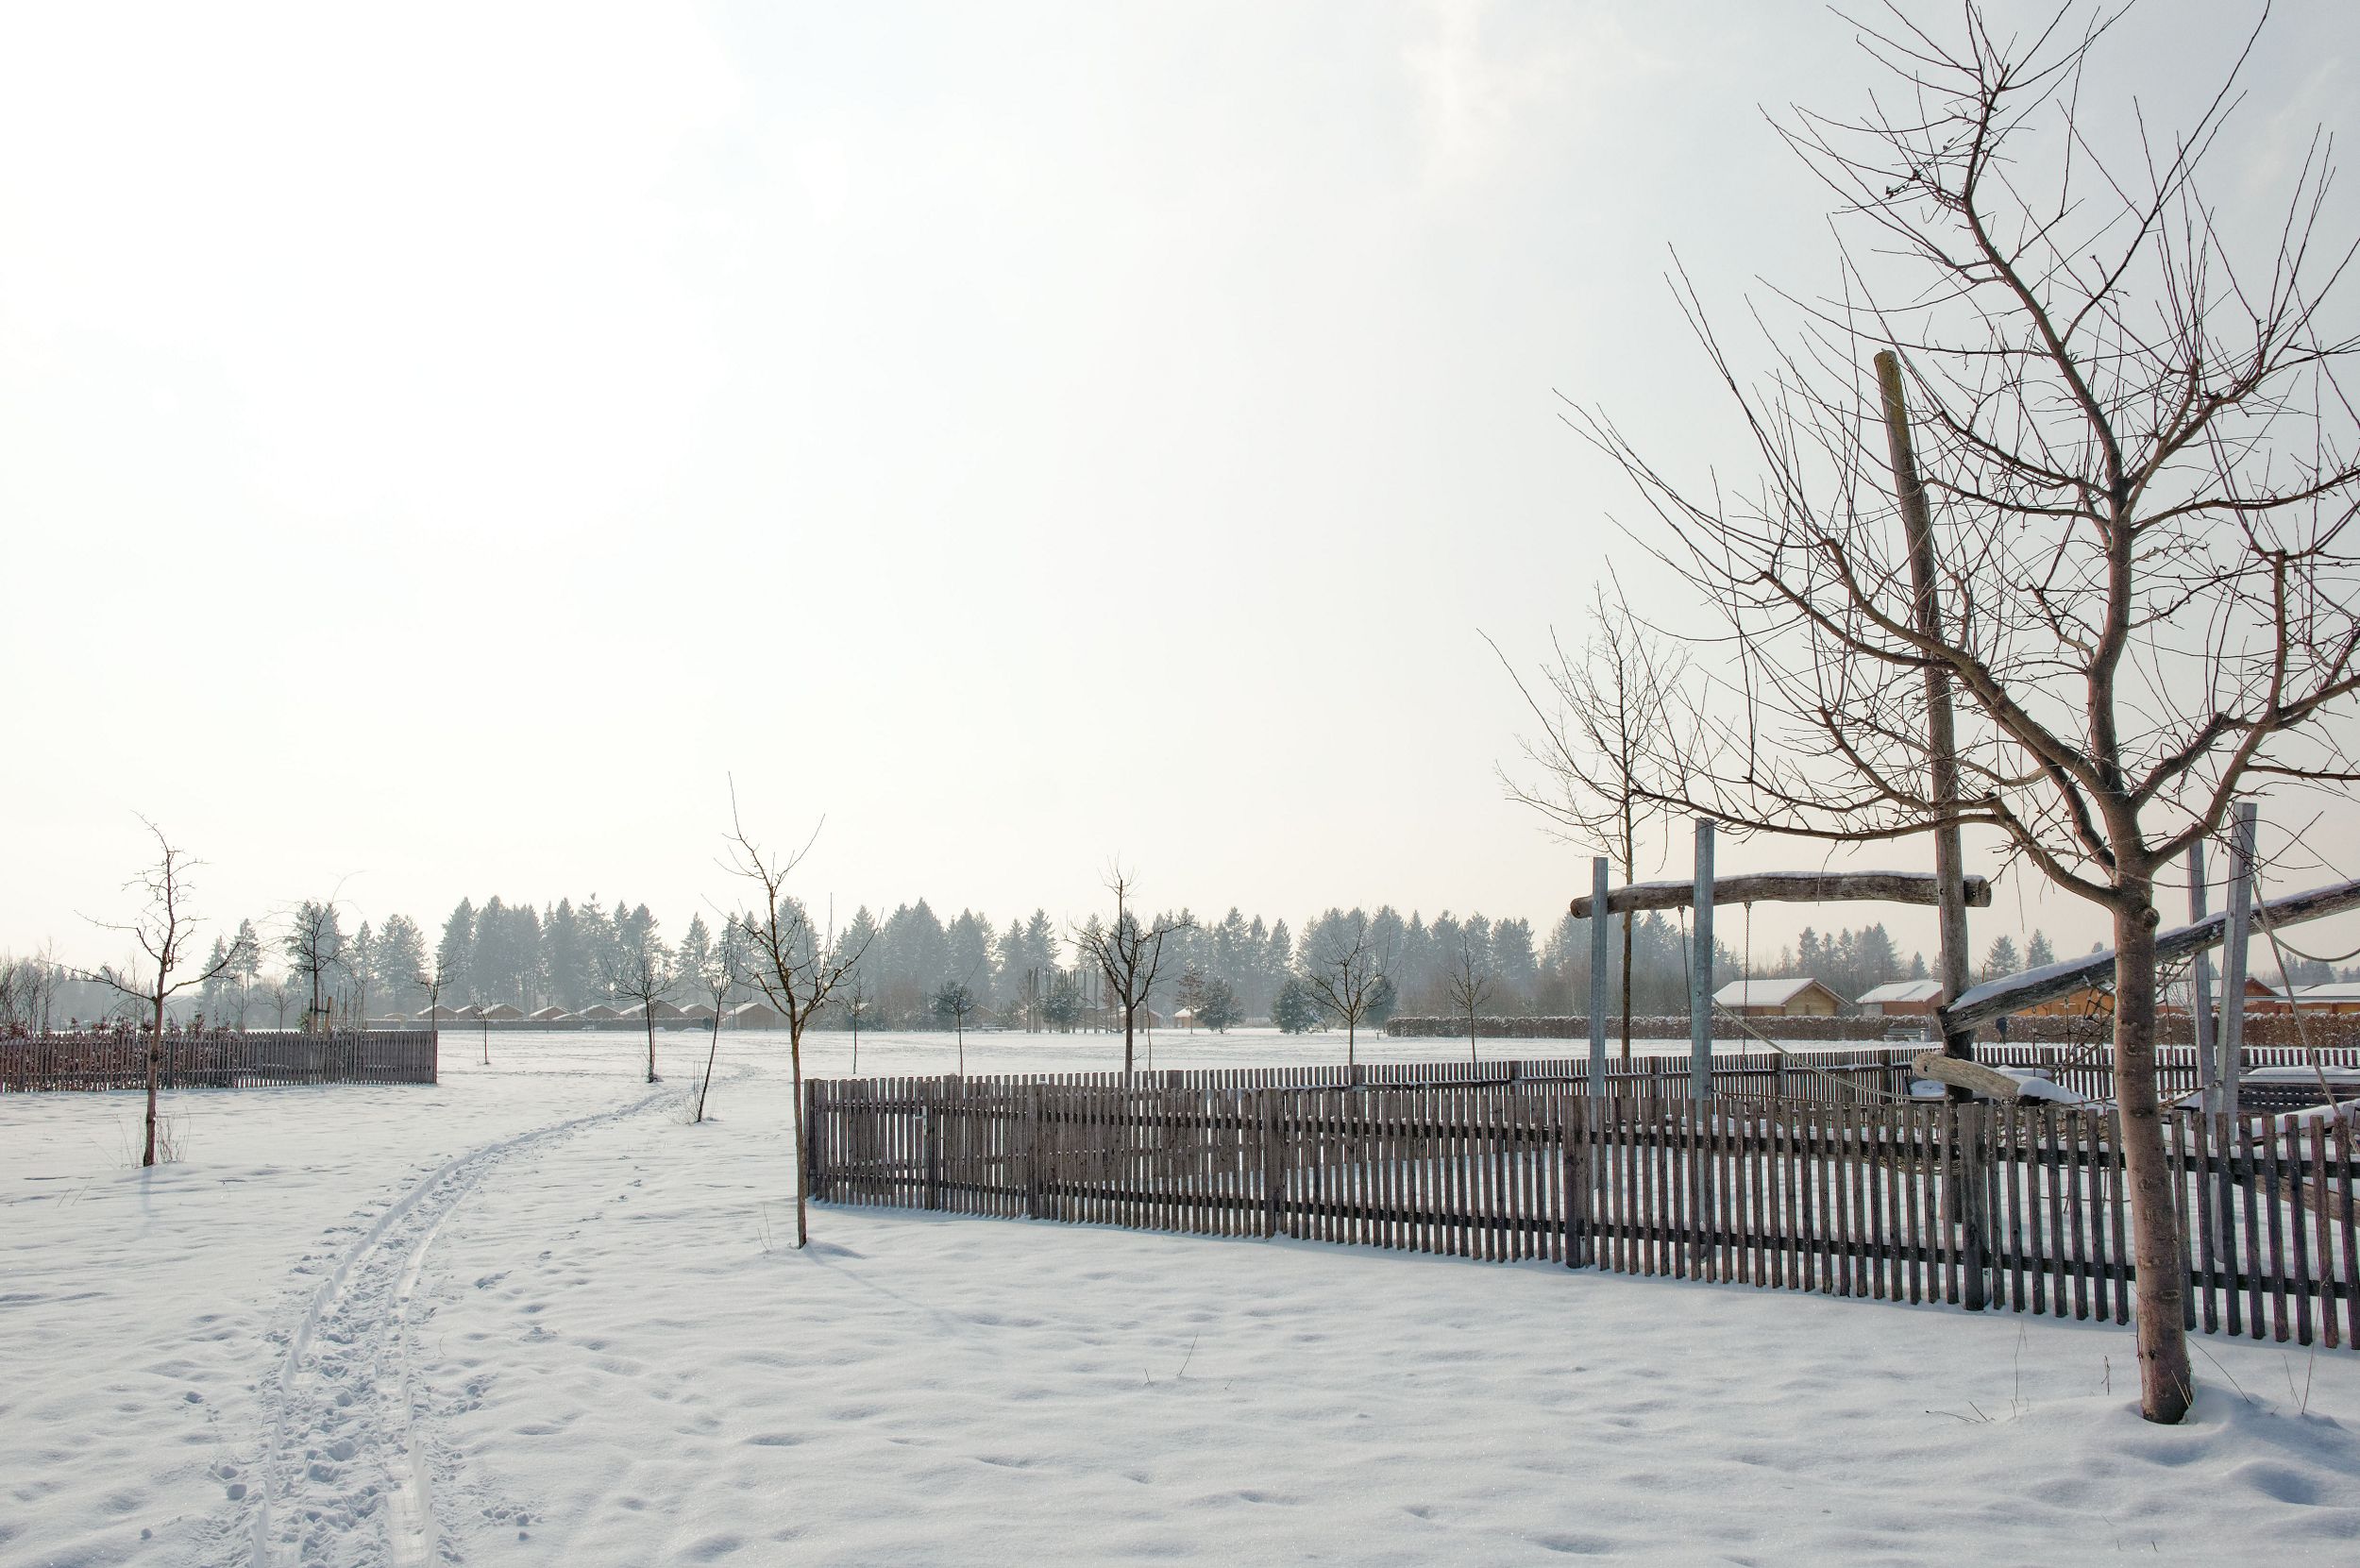 Bild: Blick über die Kleingartenanlagen in die Weite im Winter, Foto: ver.de landschaftsarchitektur